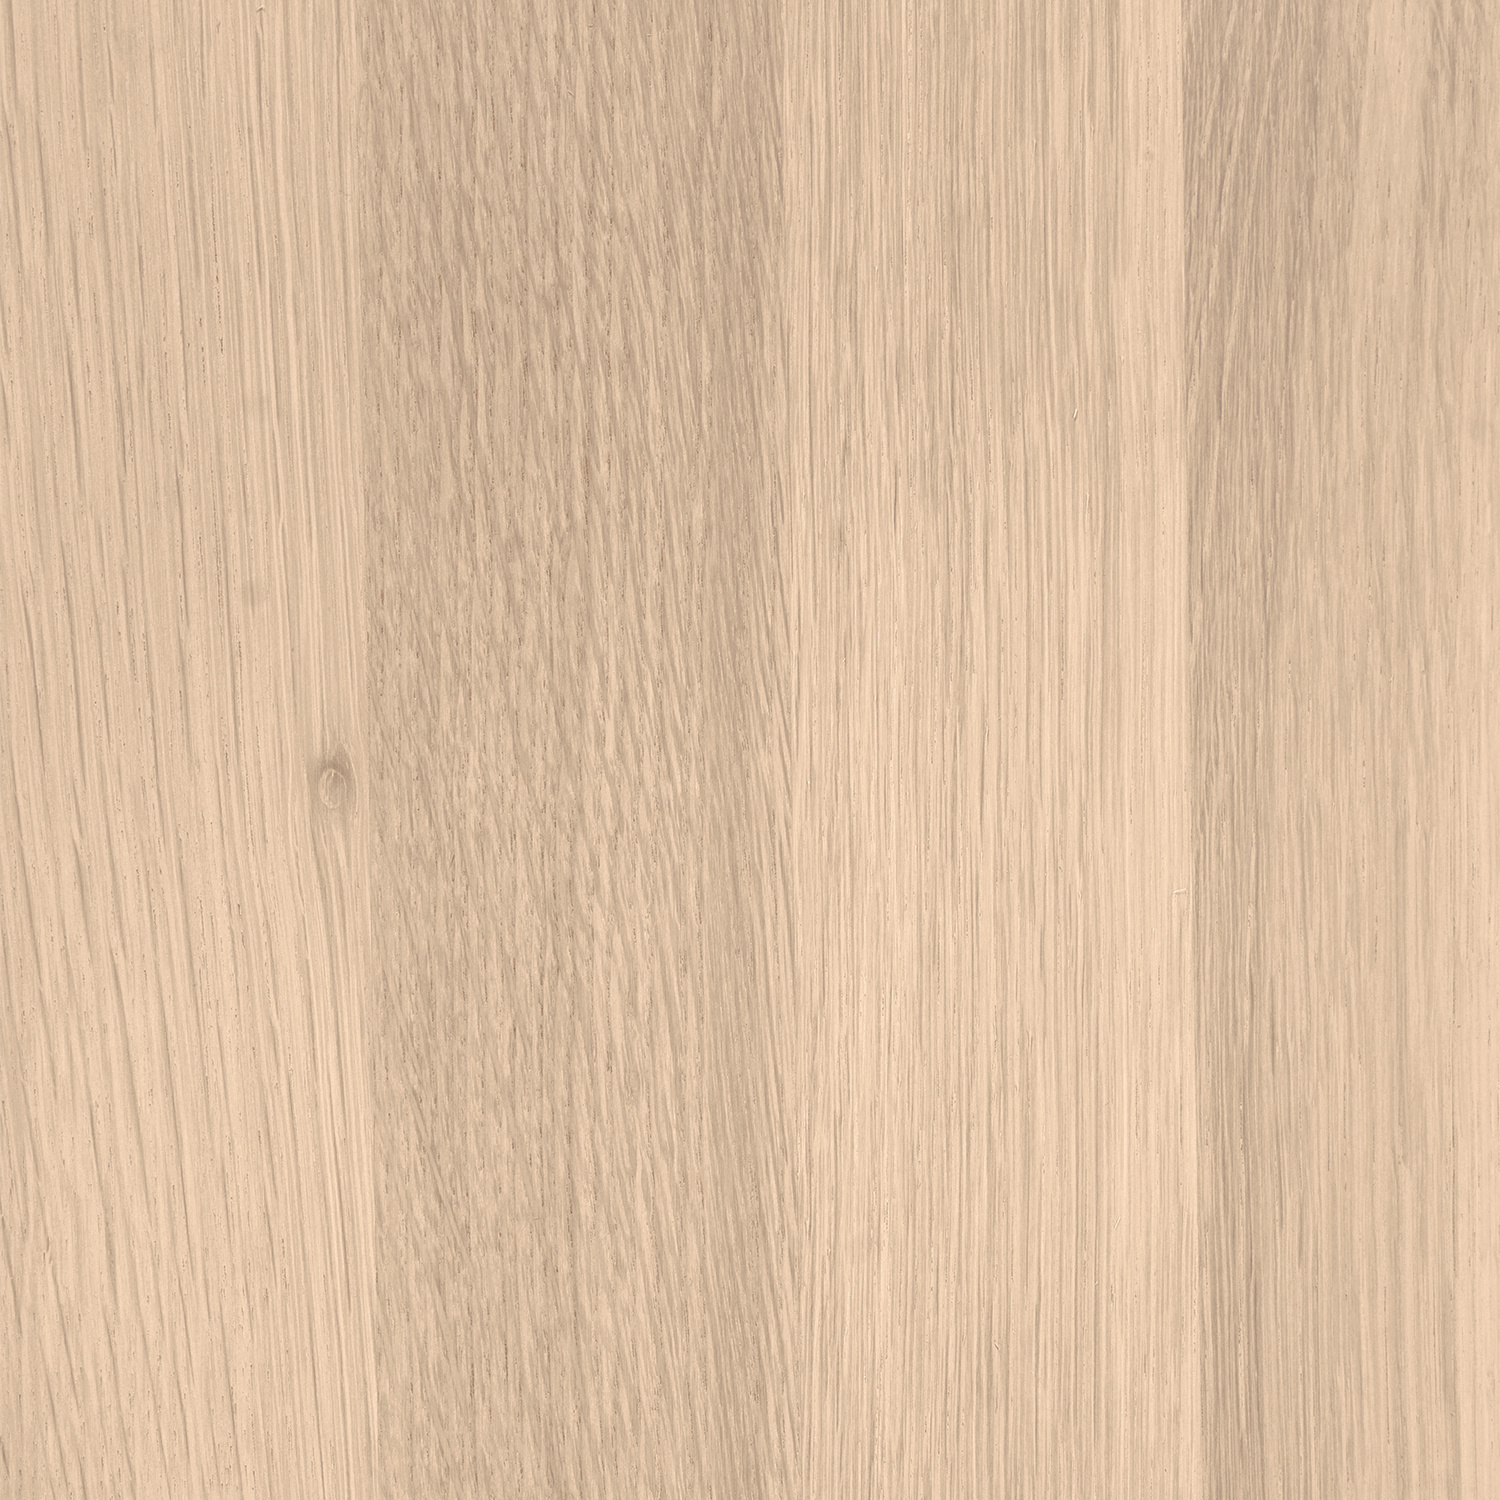  Wandregal Eiche schwebend - mit Schweizer Kante - nach Maß - 2,7 cm dick - Eichenholz A-Qualität - vorgebohrtes eichen Wandboard massiv - inklusive (Blind) -Halterungen - verleimt & getrocknet (HF 8-12%) - 20-30x50-248 cm